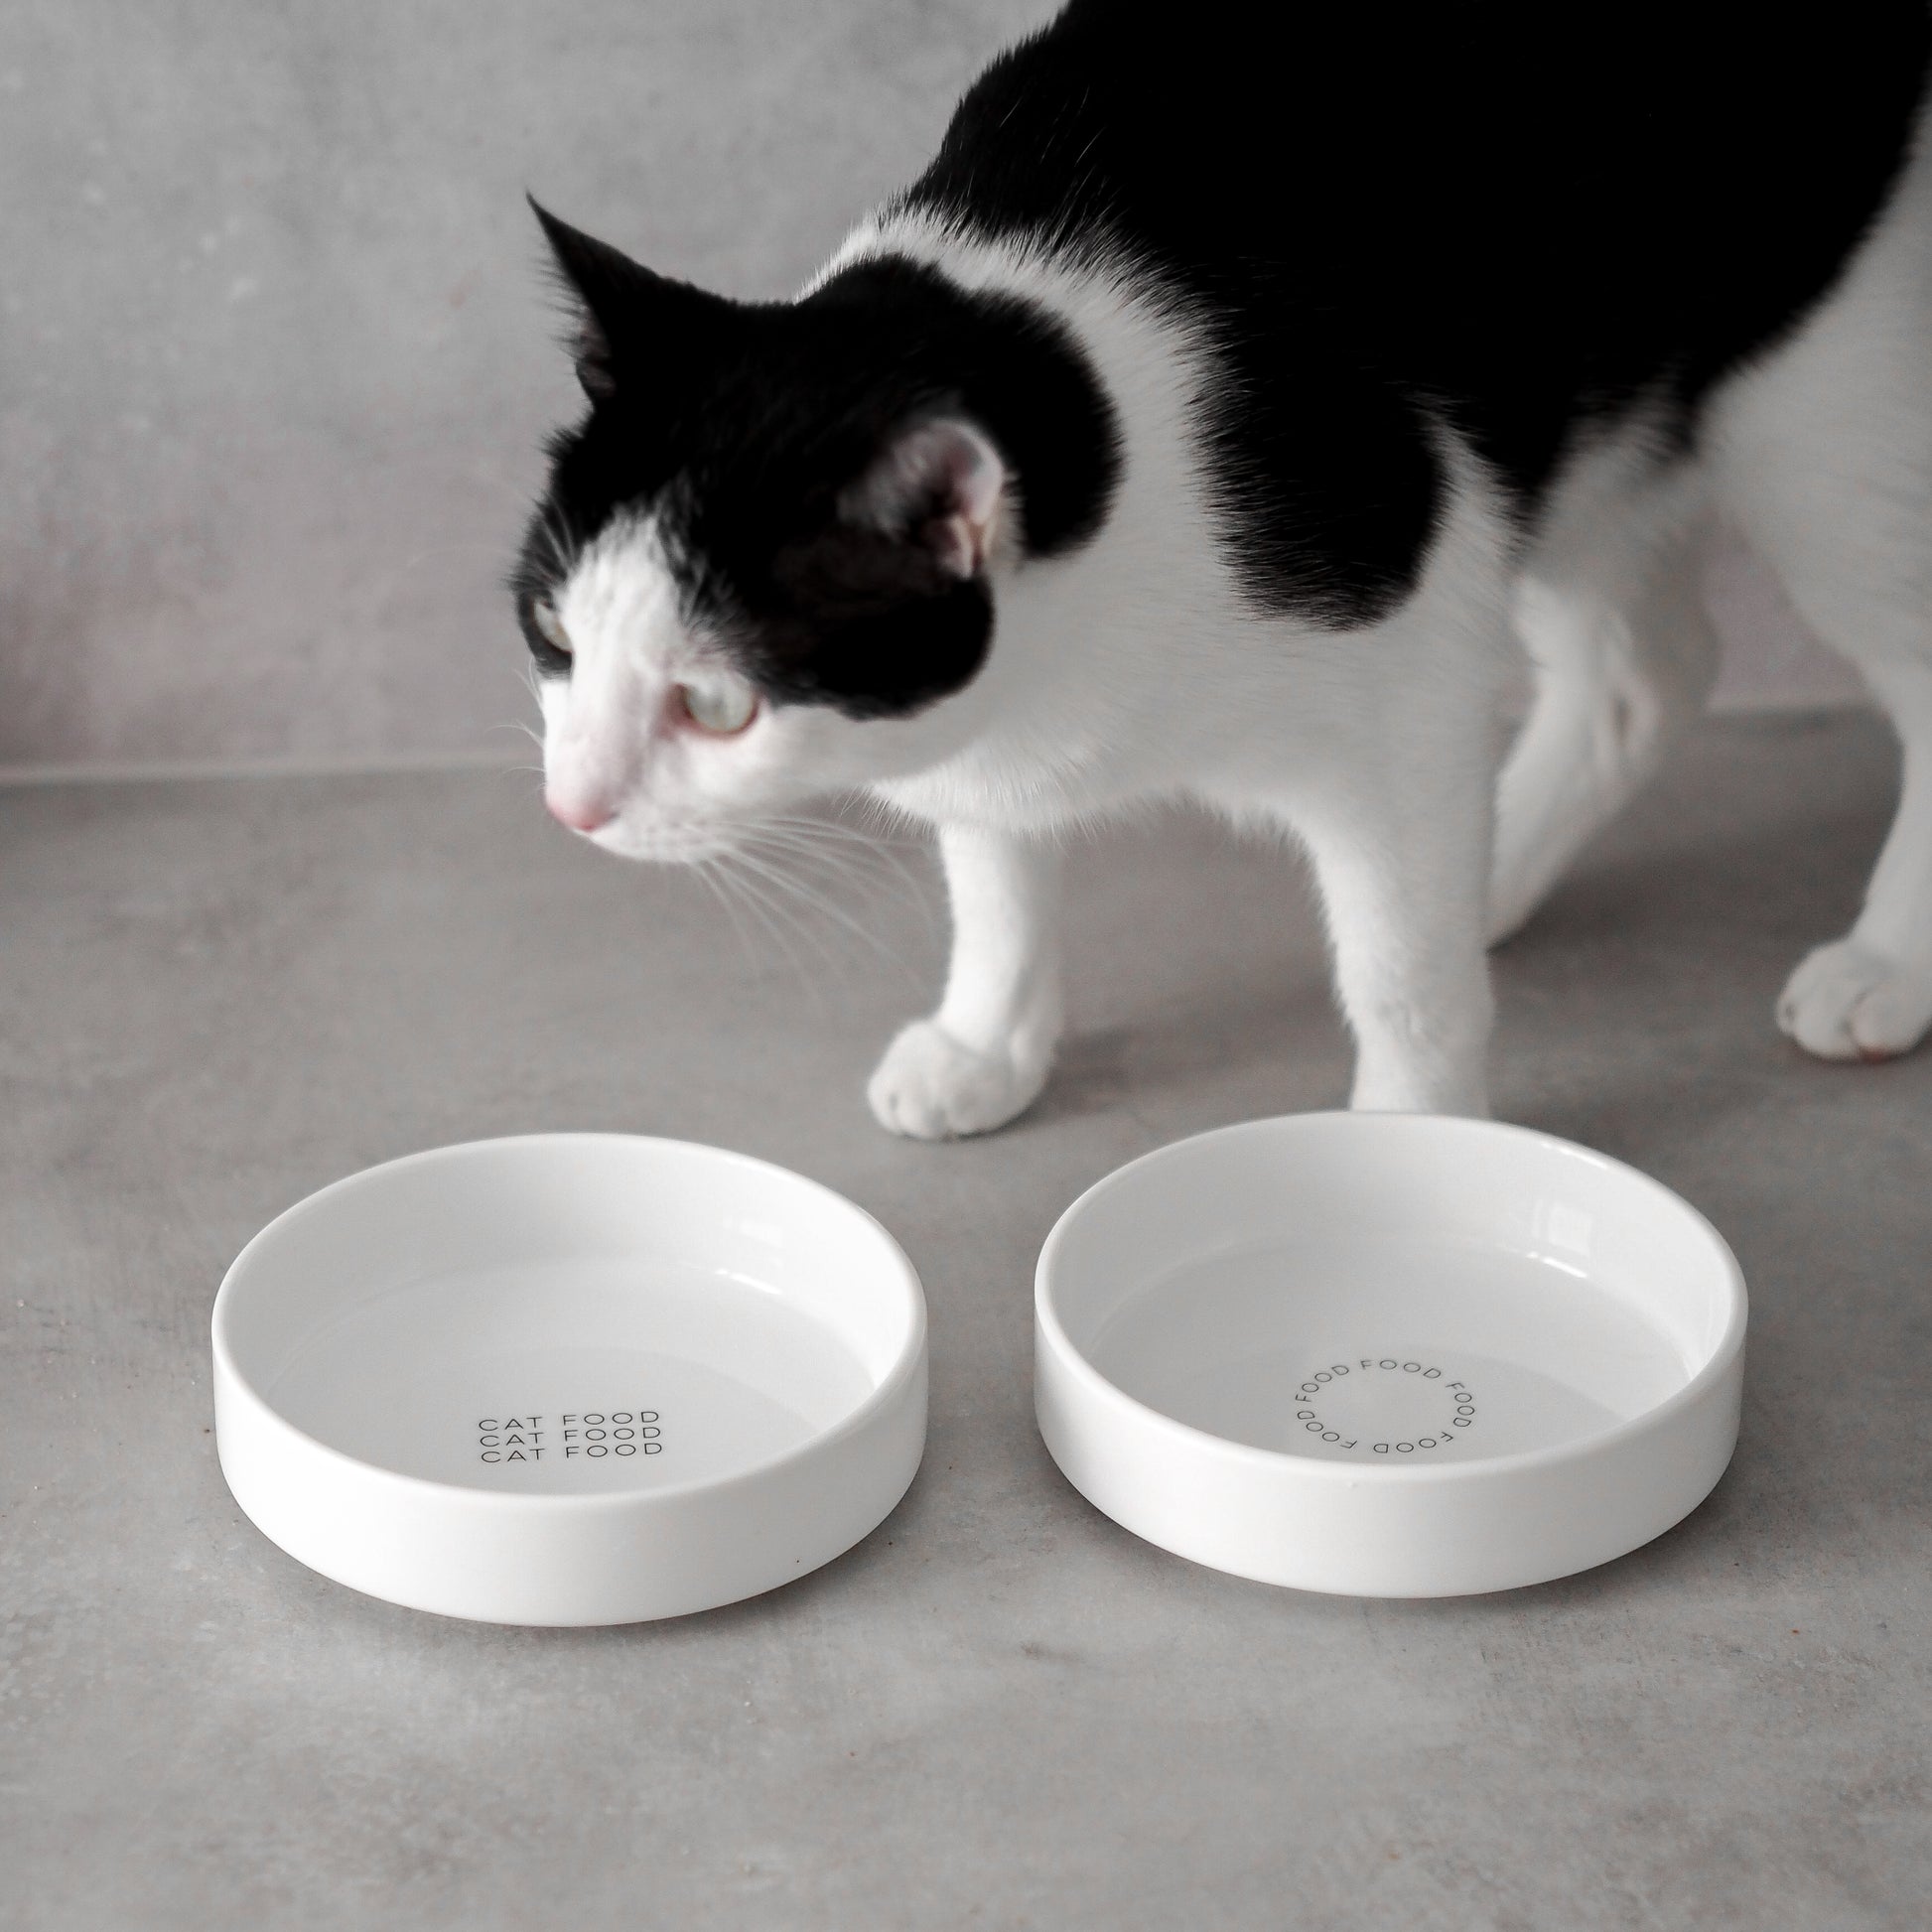 Katze steht neben flachen Keramiknäpfen für ein artgerechtes Füttern